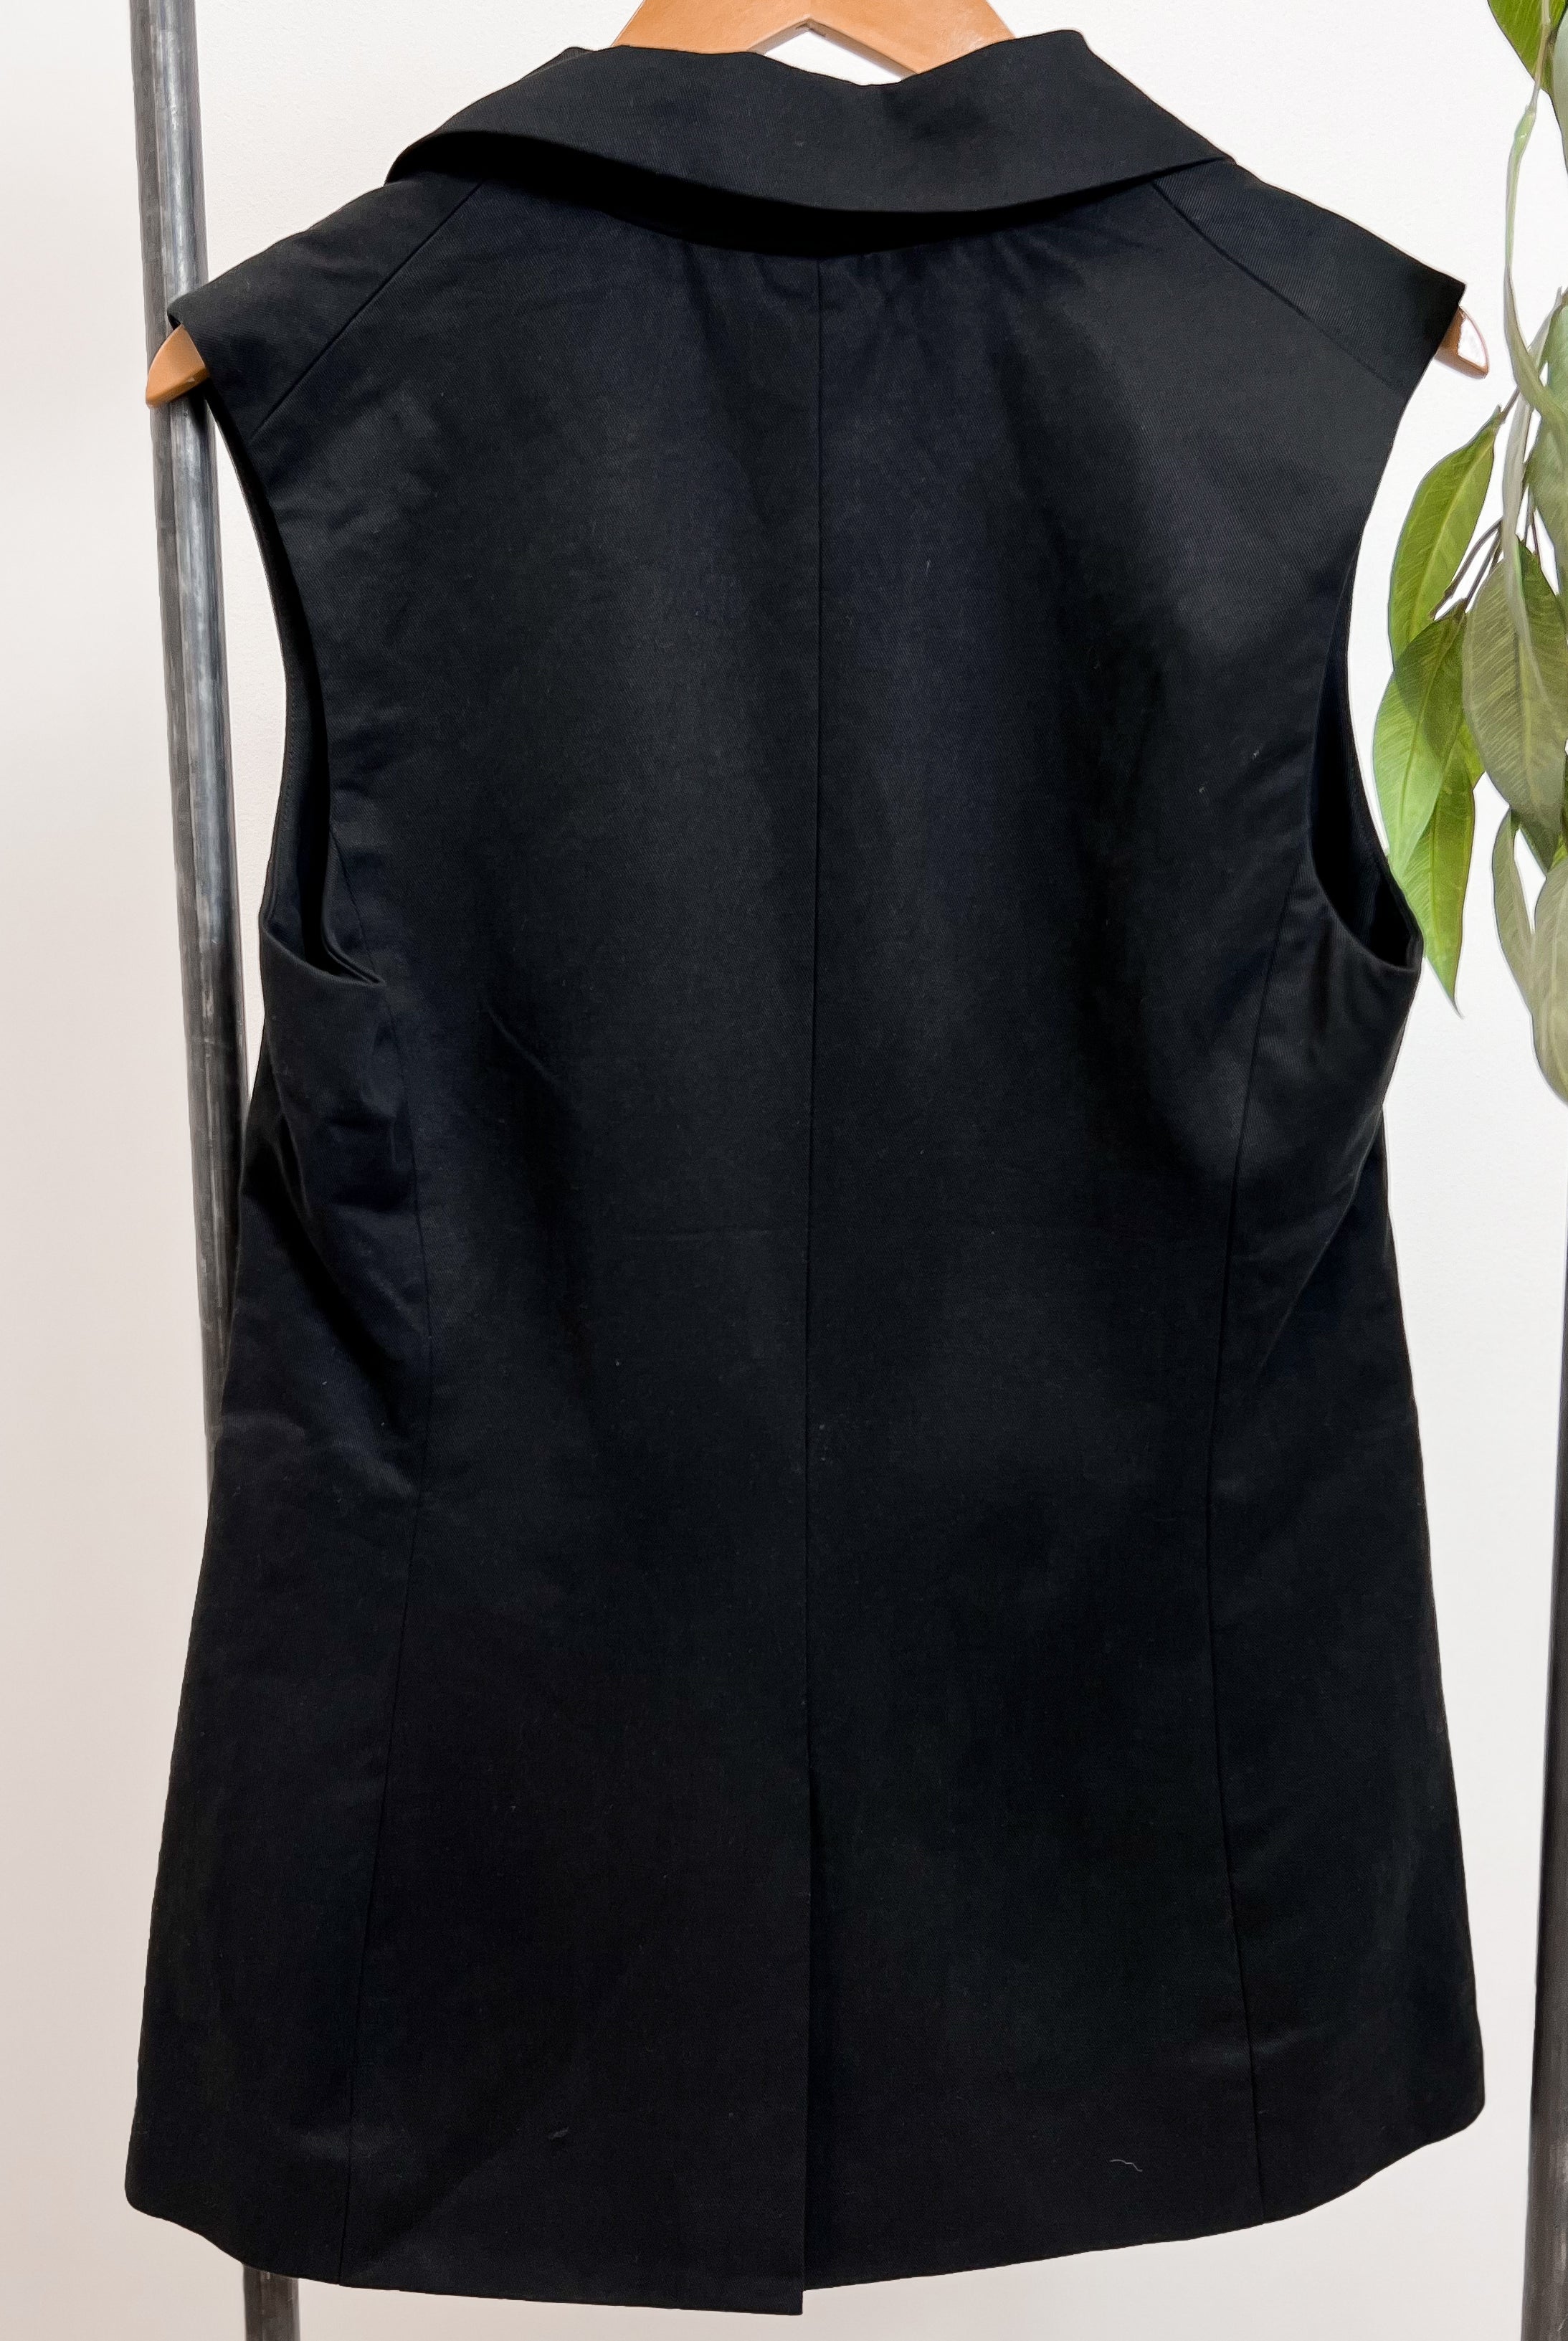 Mainstream Boutique Stillwater Women’s Blazer Vest